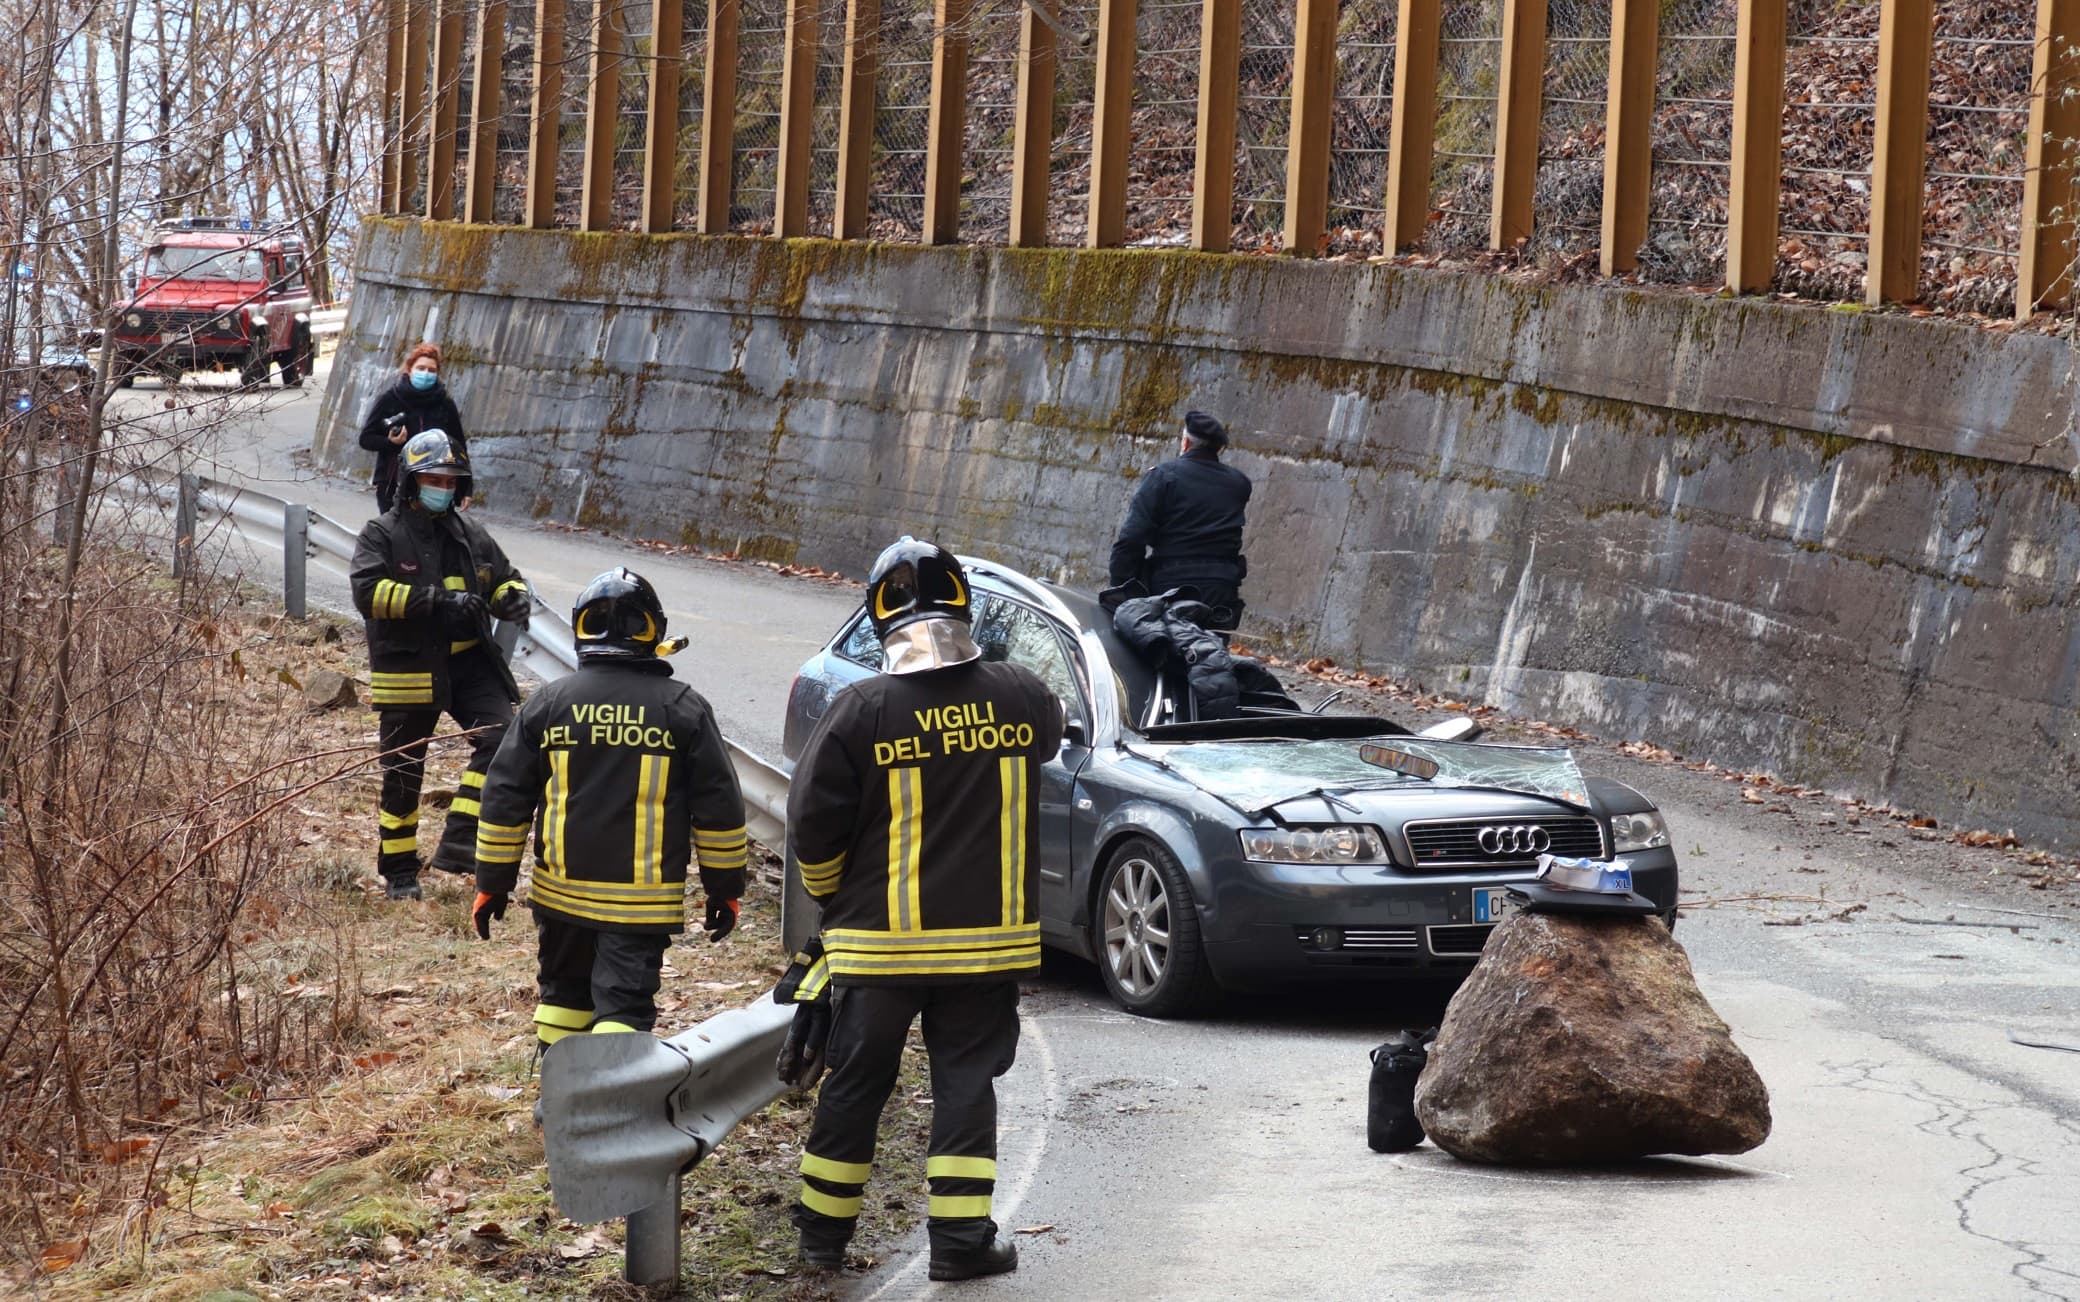 Soccorritori sul luogo dove un masso si è staccato dalla montagna e ha travolto un auto, uccidendo la persona che si trovava all'interno a Civo, 8 febbraio 2021.ANSA/ANP